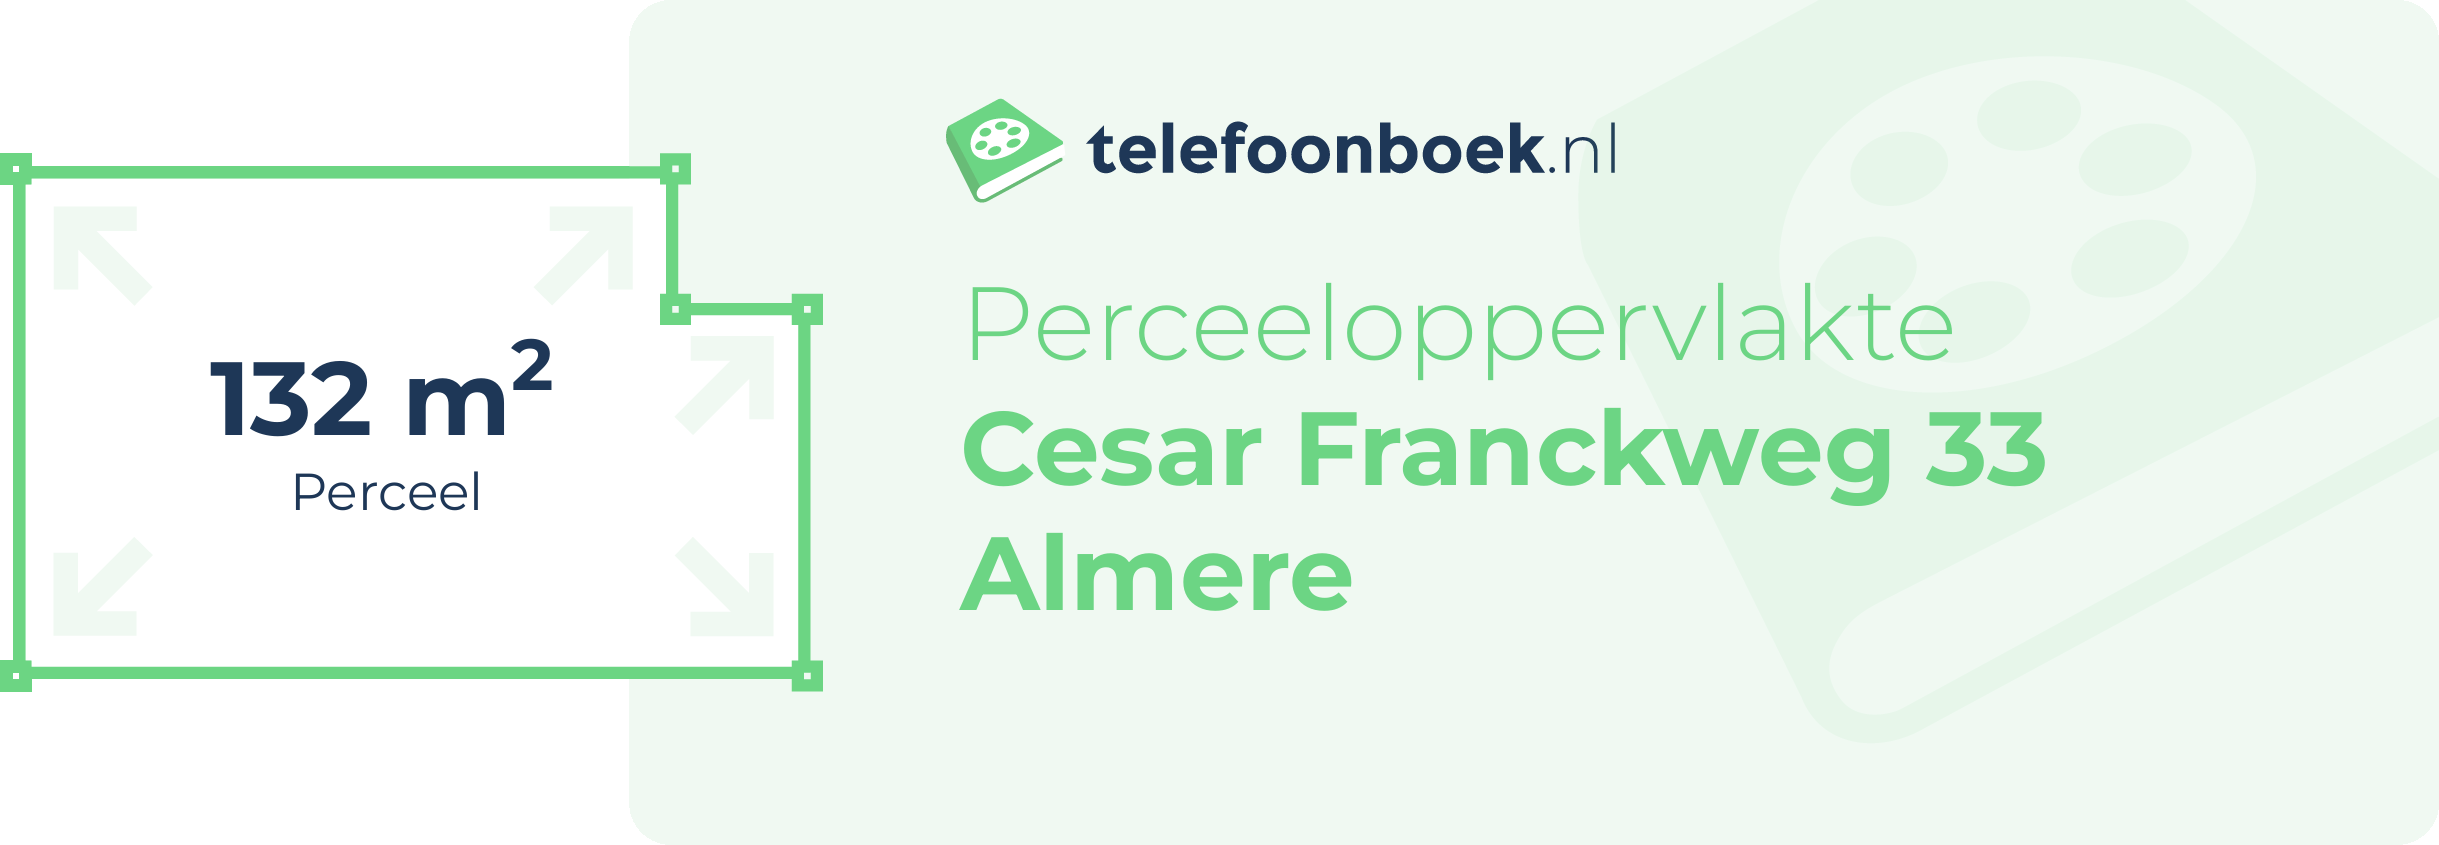 Perceeloppervlakte Cesar Franckweg 33 Almere